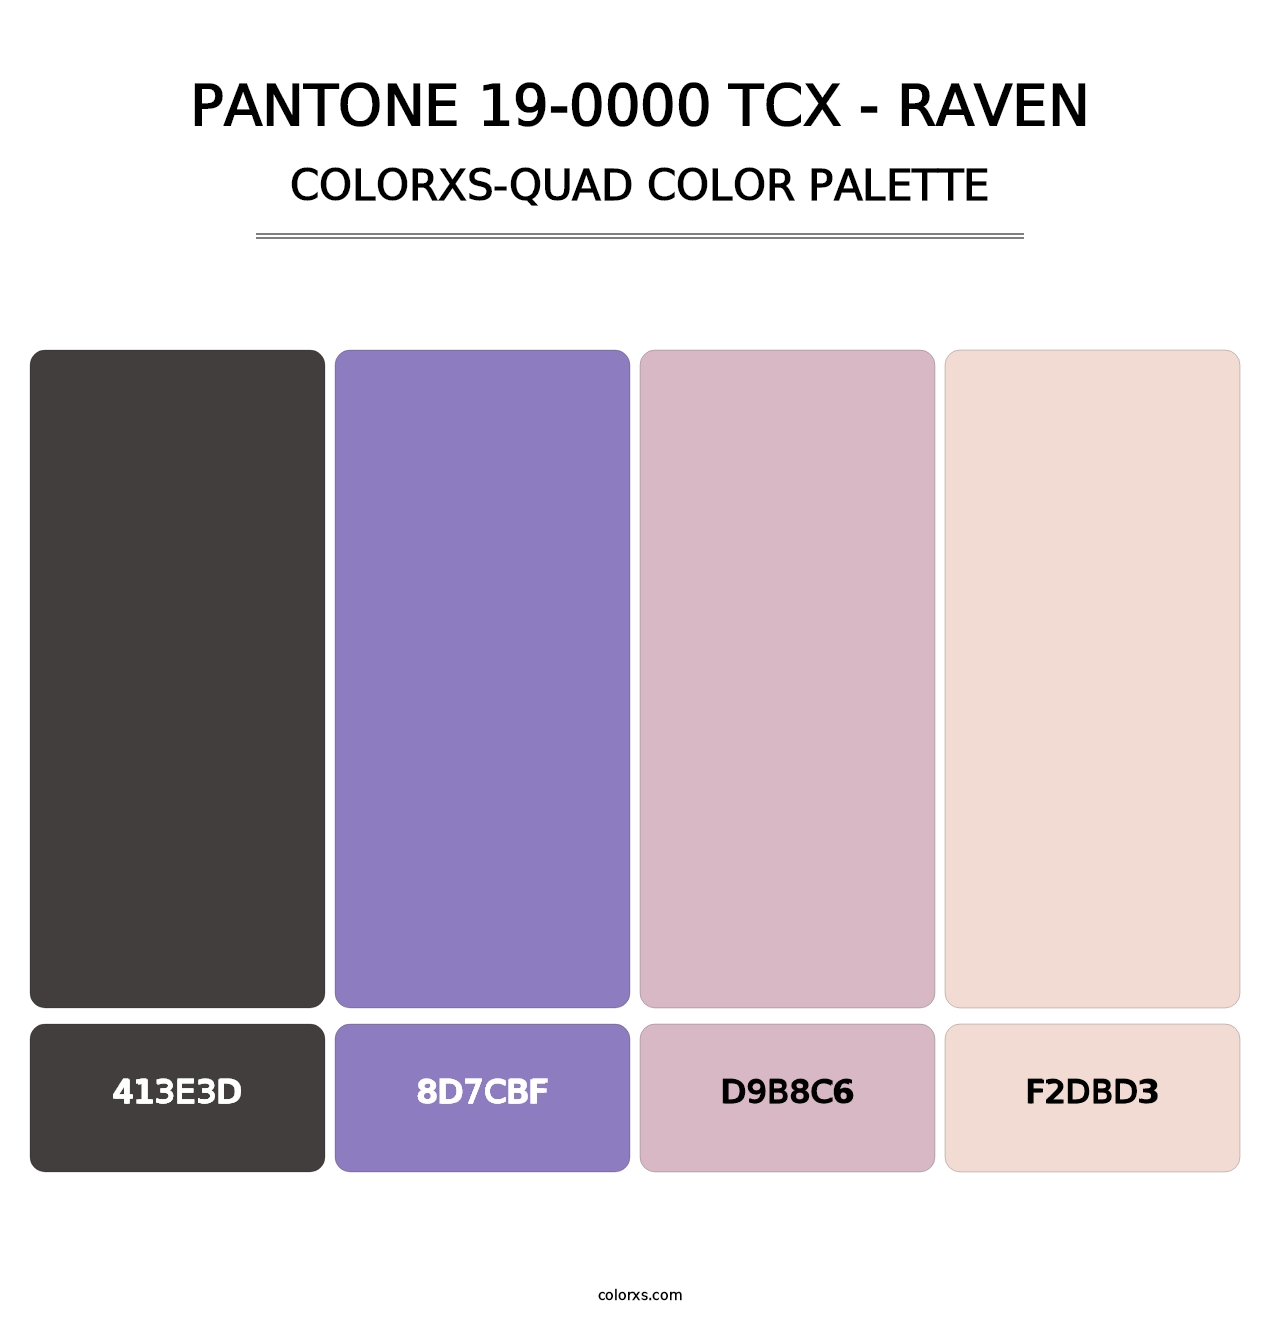 PANTONE 19-0000 TCX - Raven - Colorxs Quad Palette